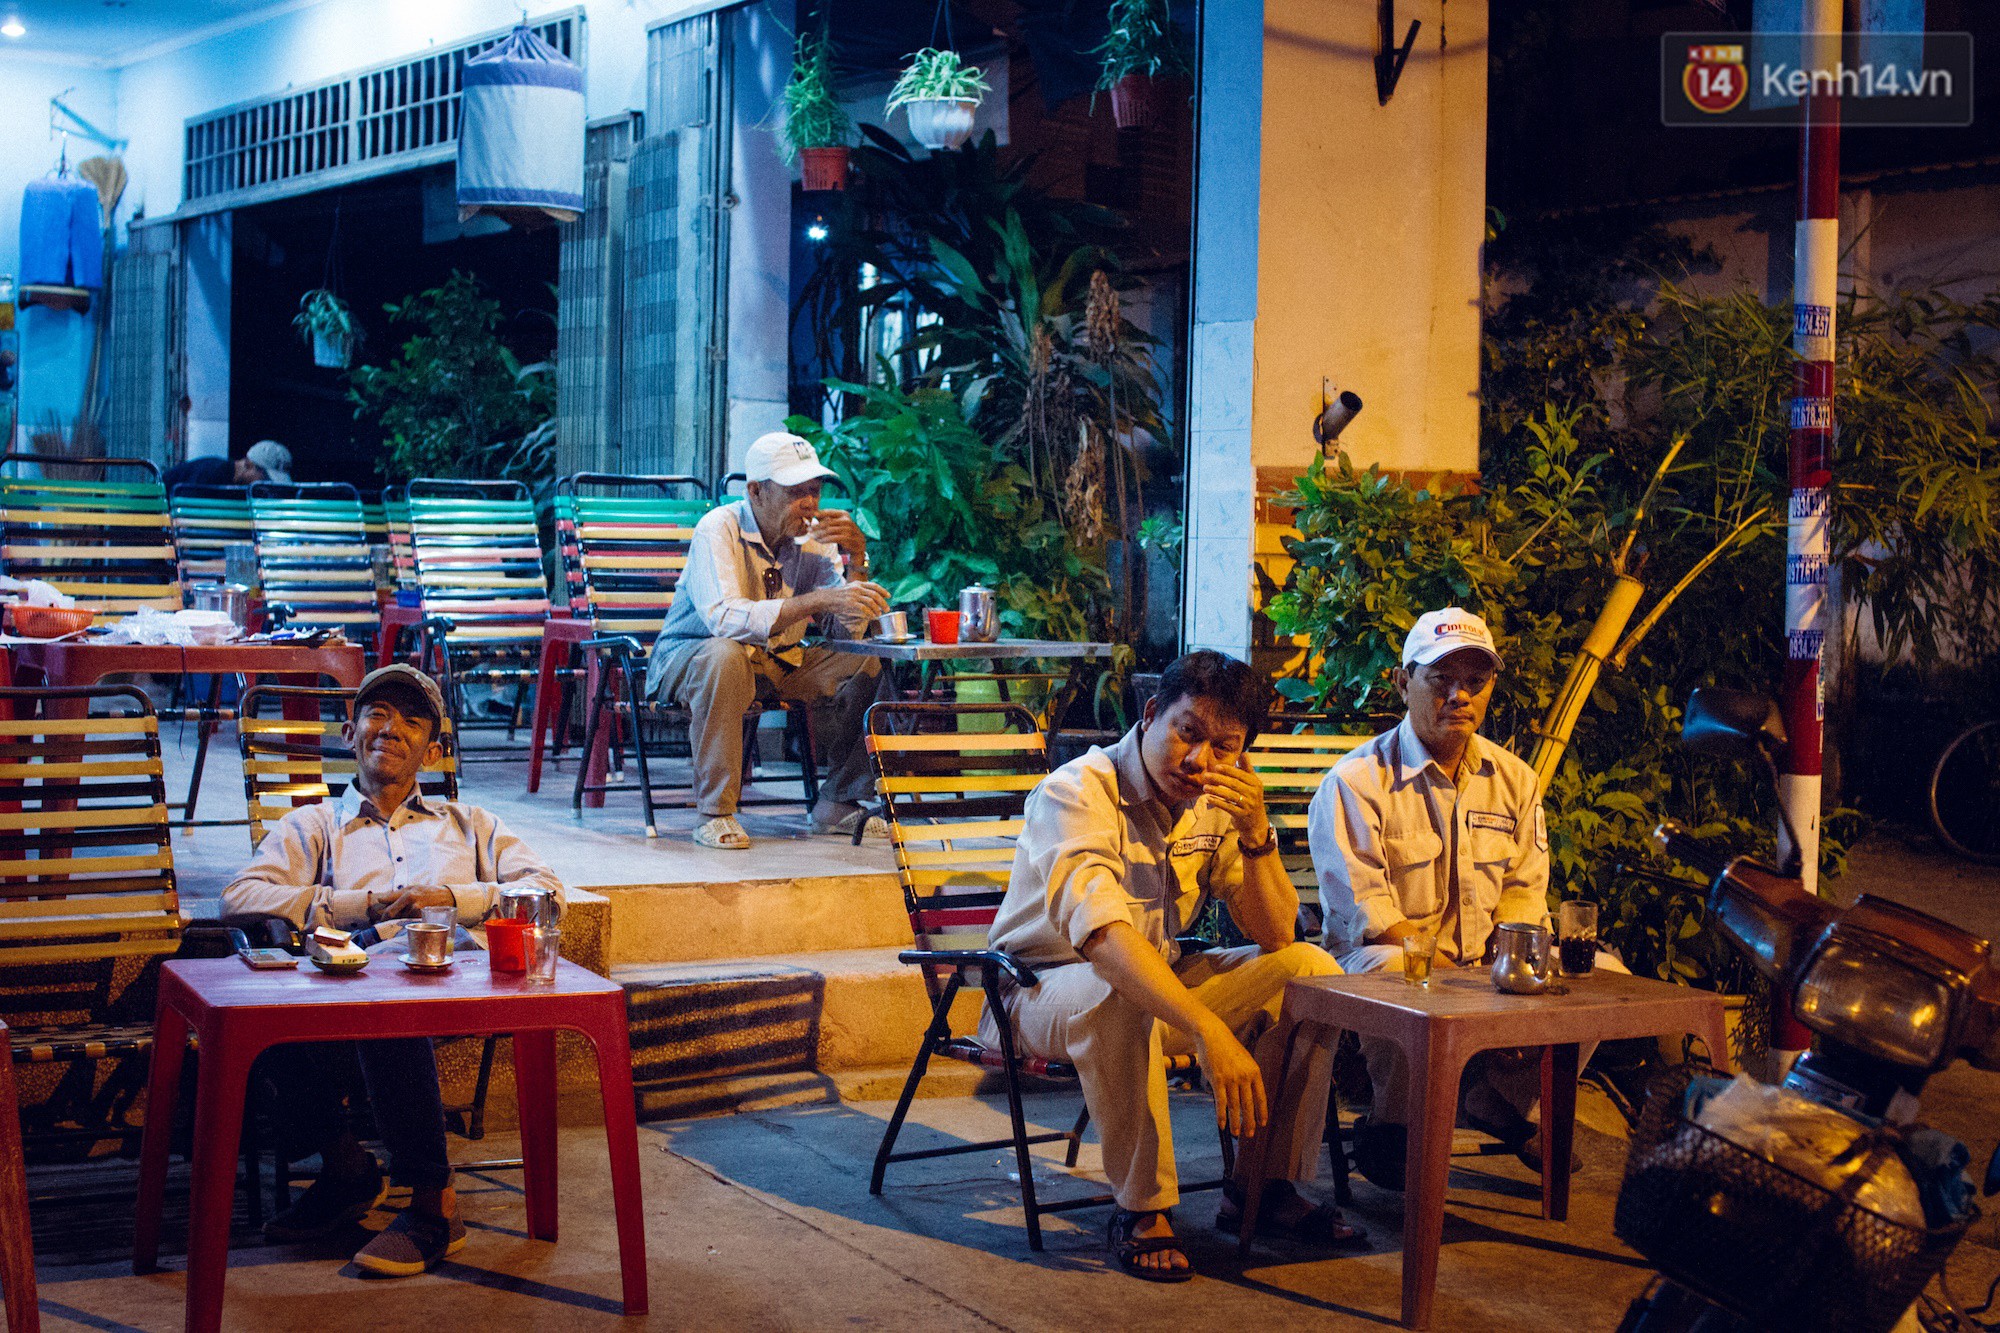 Cập nhật 10 quán cafe view đẹp chất lừ tha hồ sống ảo ở Hà Nội năm 2021   Viet Fun Travel